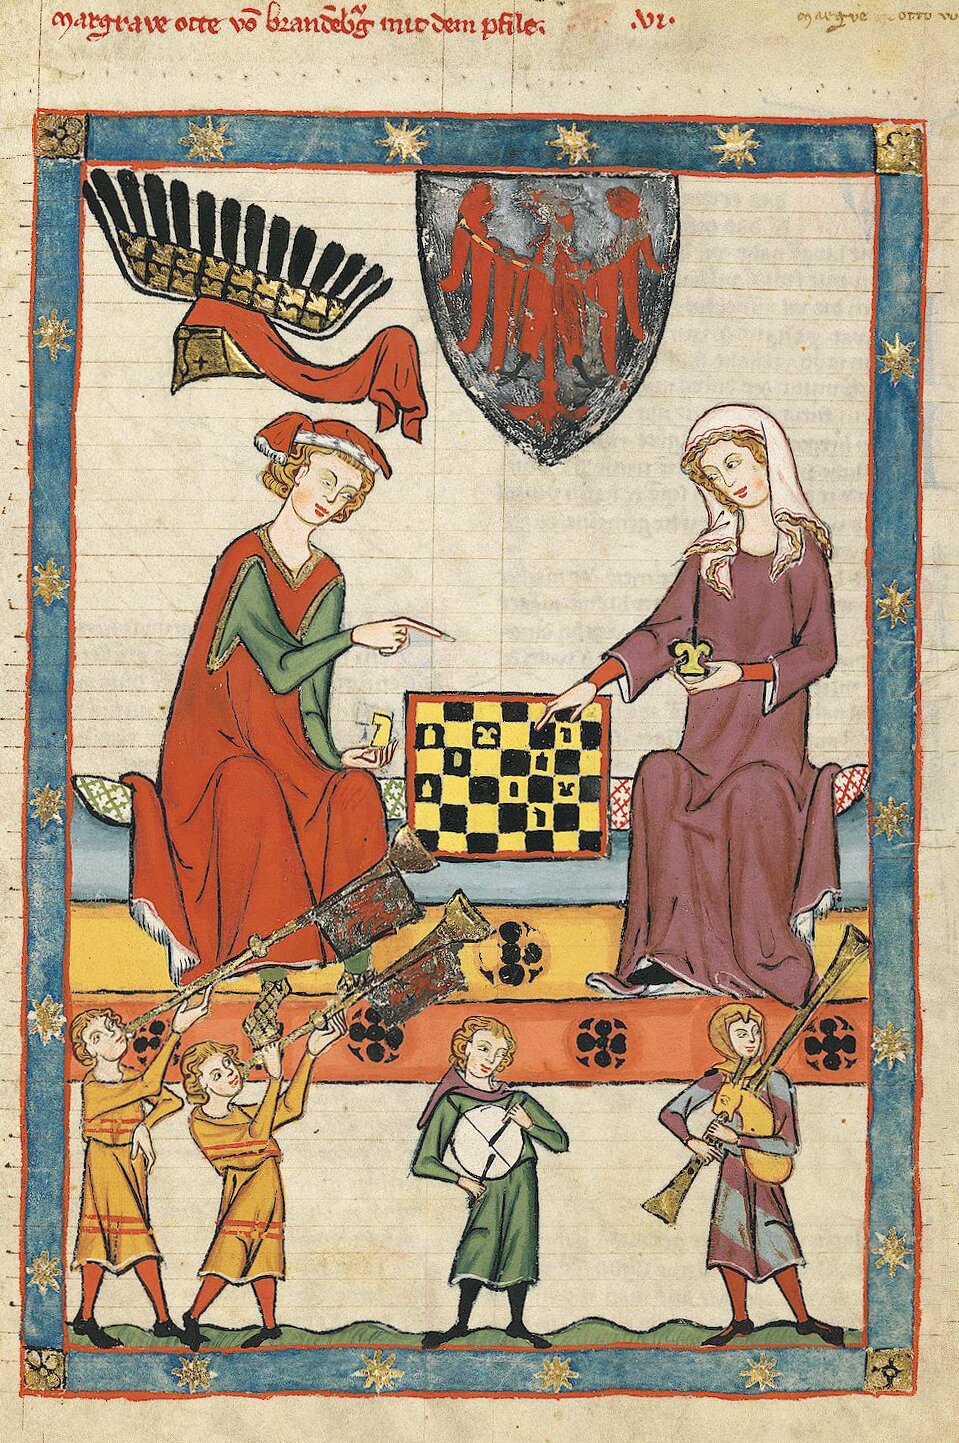 Na ilustracji 6 osób. Co ciekawe osoby na drugim planie są większe od osób na planie pierwszym. Na drugim planie mężczyzna i kobieta grają w szachy, mężczyzna pokazuje coś palcem prawej ręki na szachownicę, kobieta również wskazuje palcami prawej ręki szachownicę. W lewej ręce trzyma figurę szachową podobnie jak mężczyzna nad nimi. Herb na tarczy herbowej, poniżej 4 osoby grające na instrumentach.